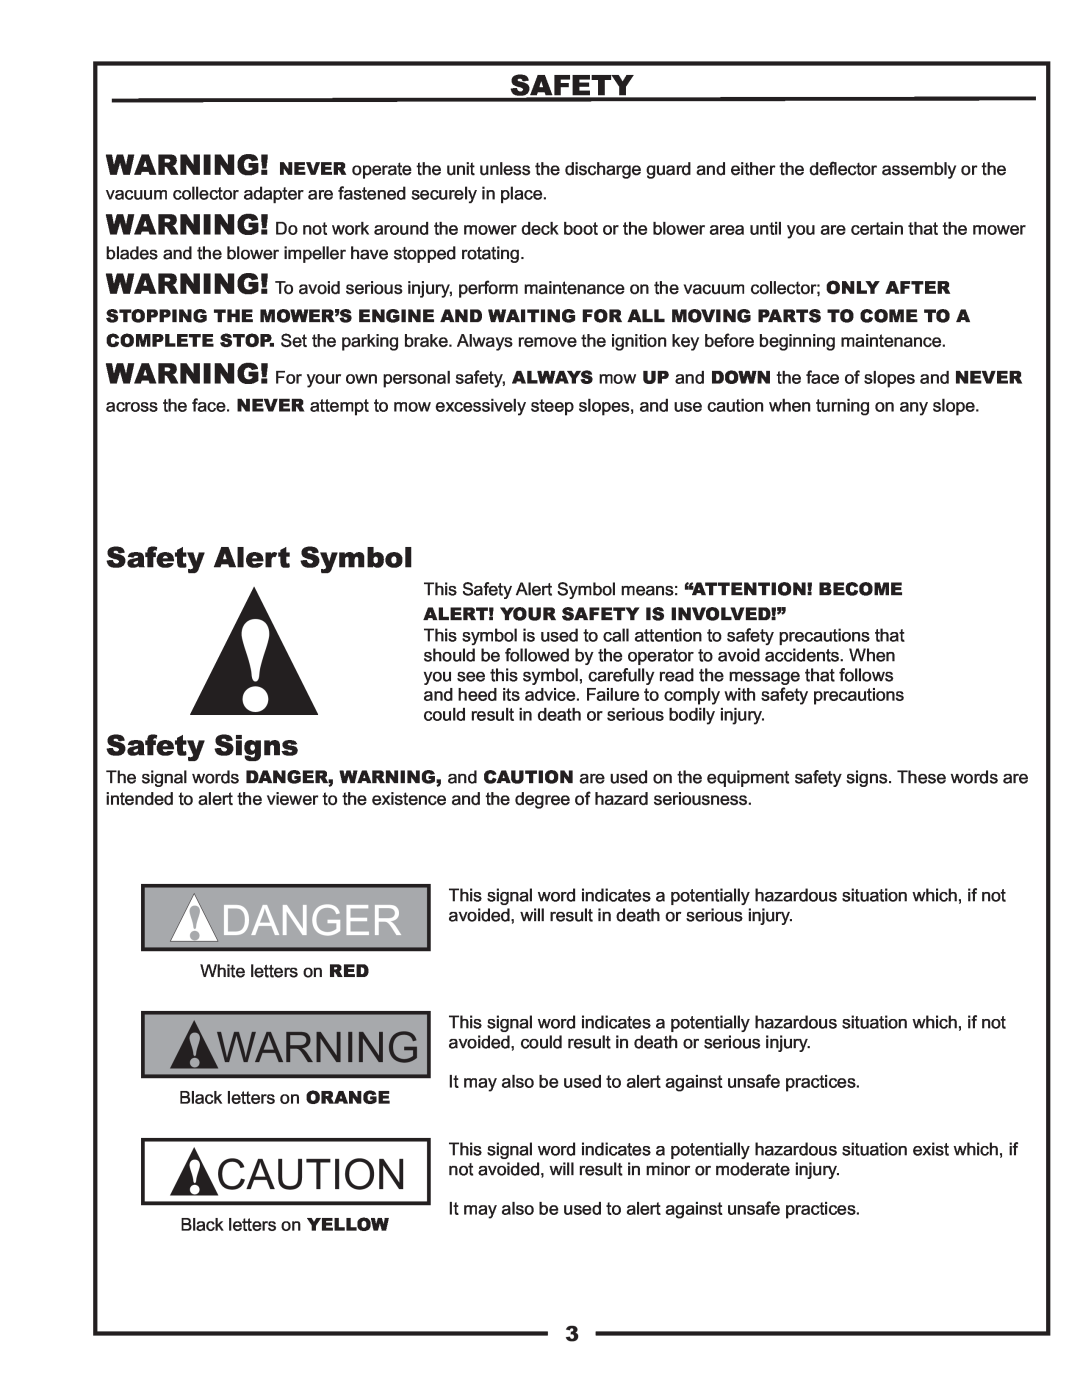 Gravely 12031301, 12031302 manual Safety Alert Symbol, Safety Signs, Danger 